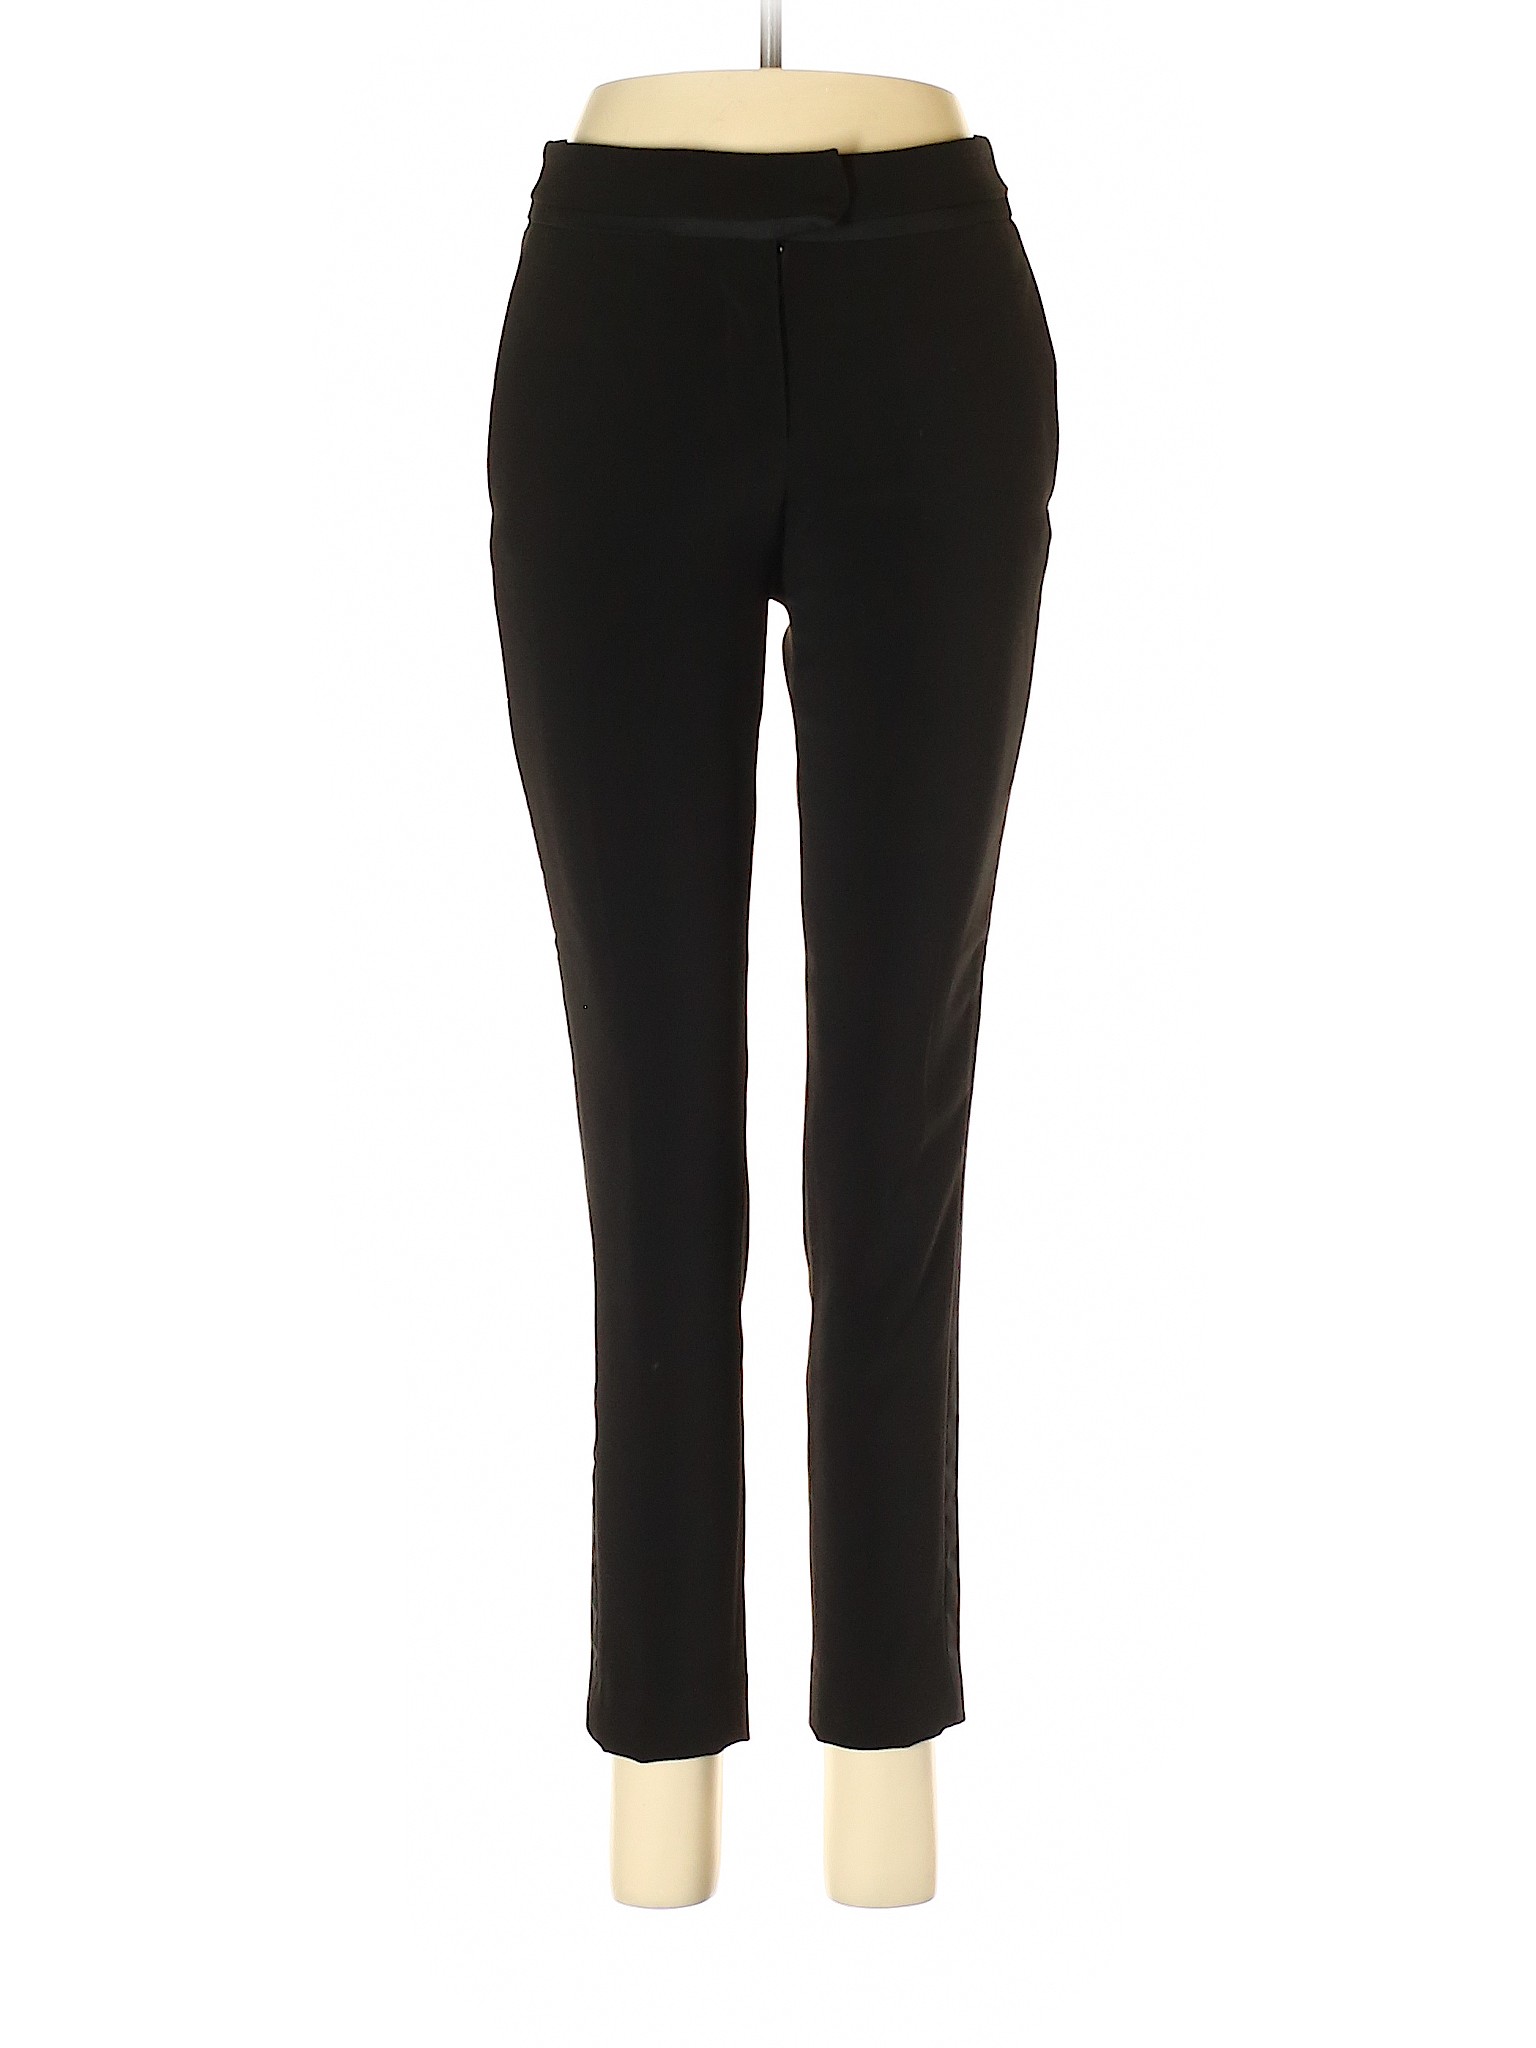 H&M Women Black Dress Pants 2 | eBay